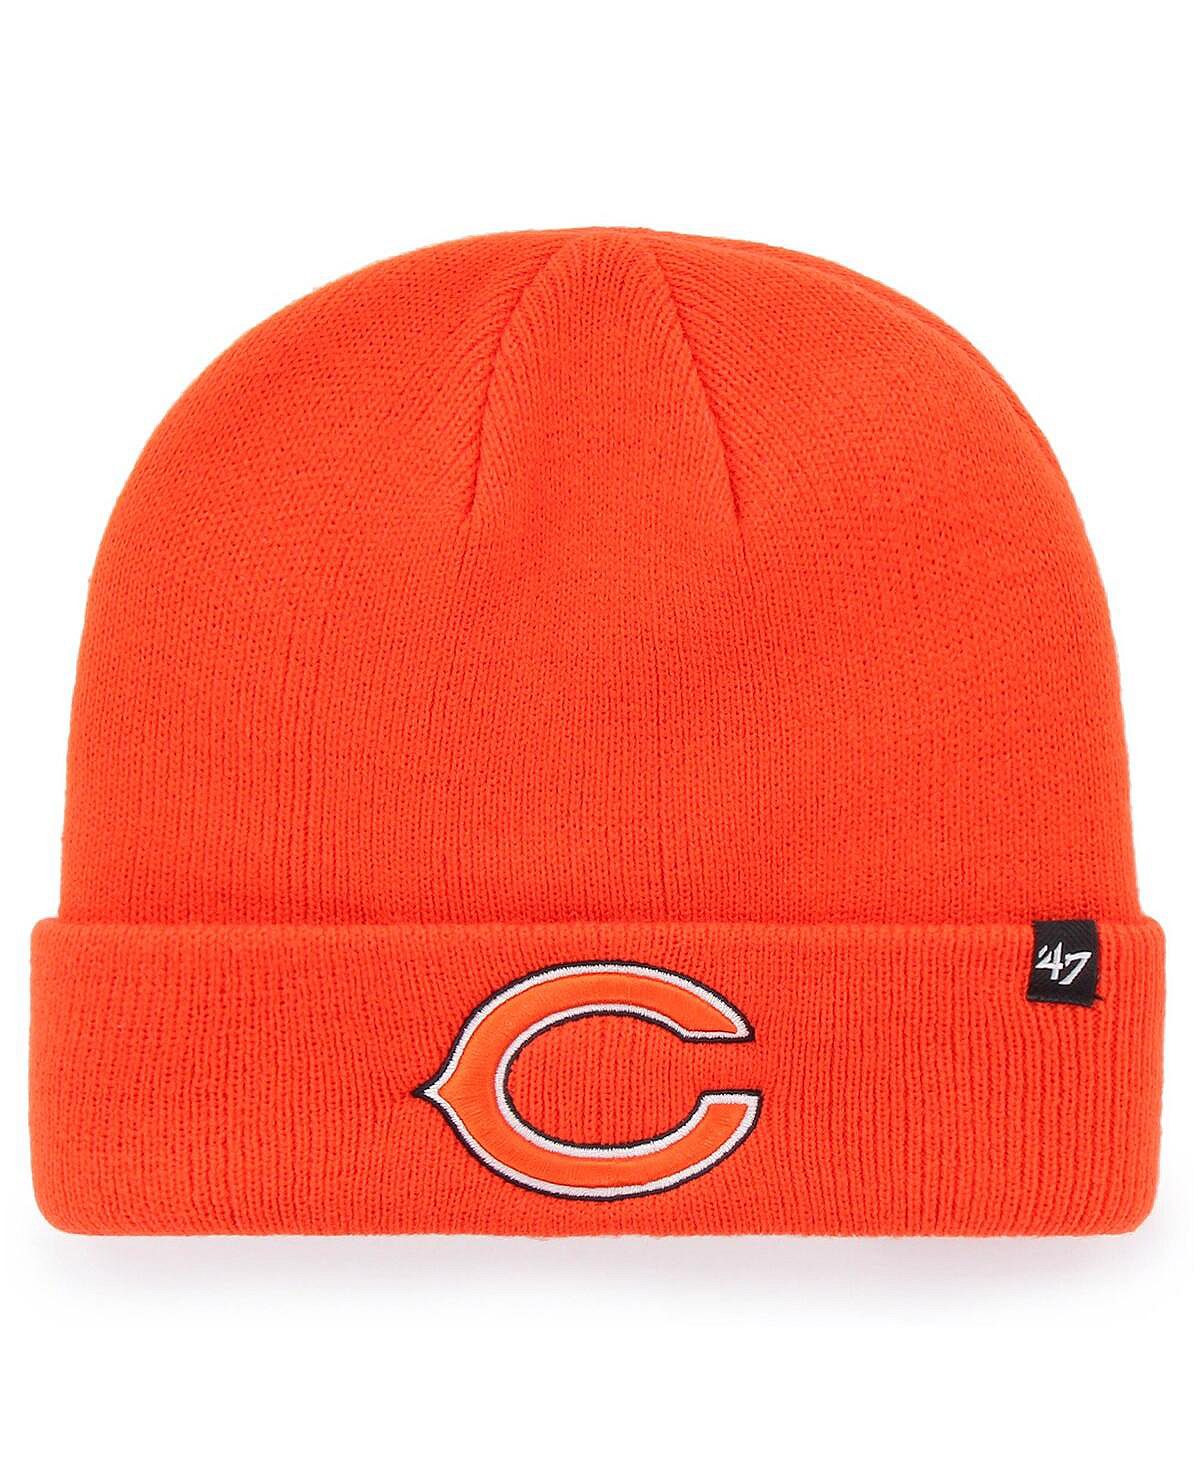 Мужская базовая вязаная шапка с манжетами '47 оранжевого цвета Chicago Bears среднего размера '47 Brand